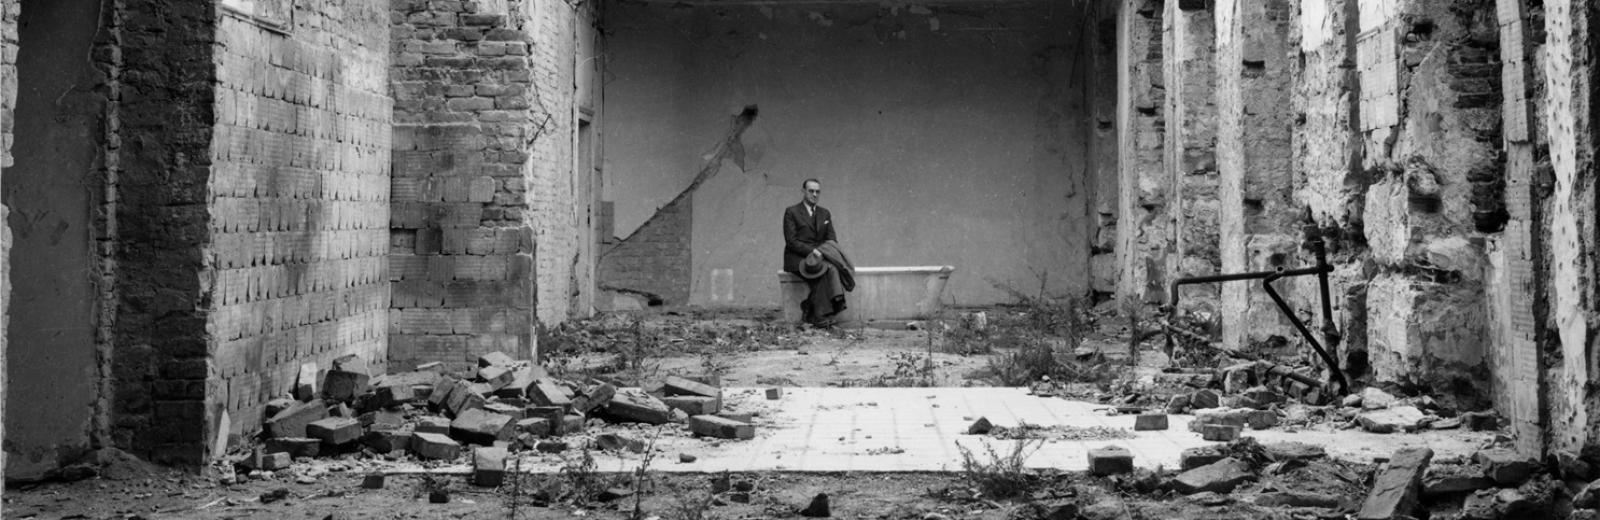 Carl Lutz nel cortile interno della legazione britannica distrutta © Archivio di storia contemporanea del PFZ / Agnes Hirschi